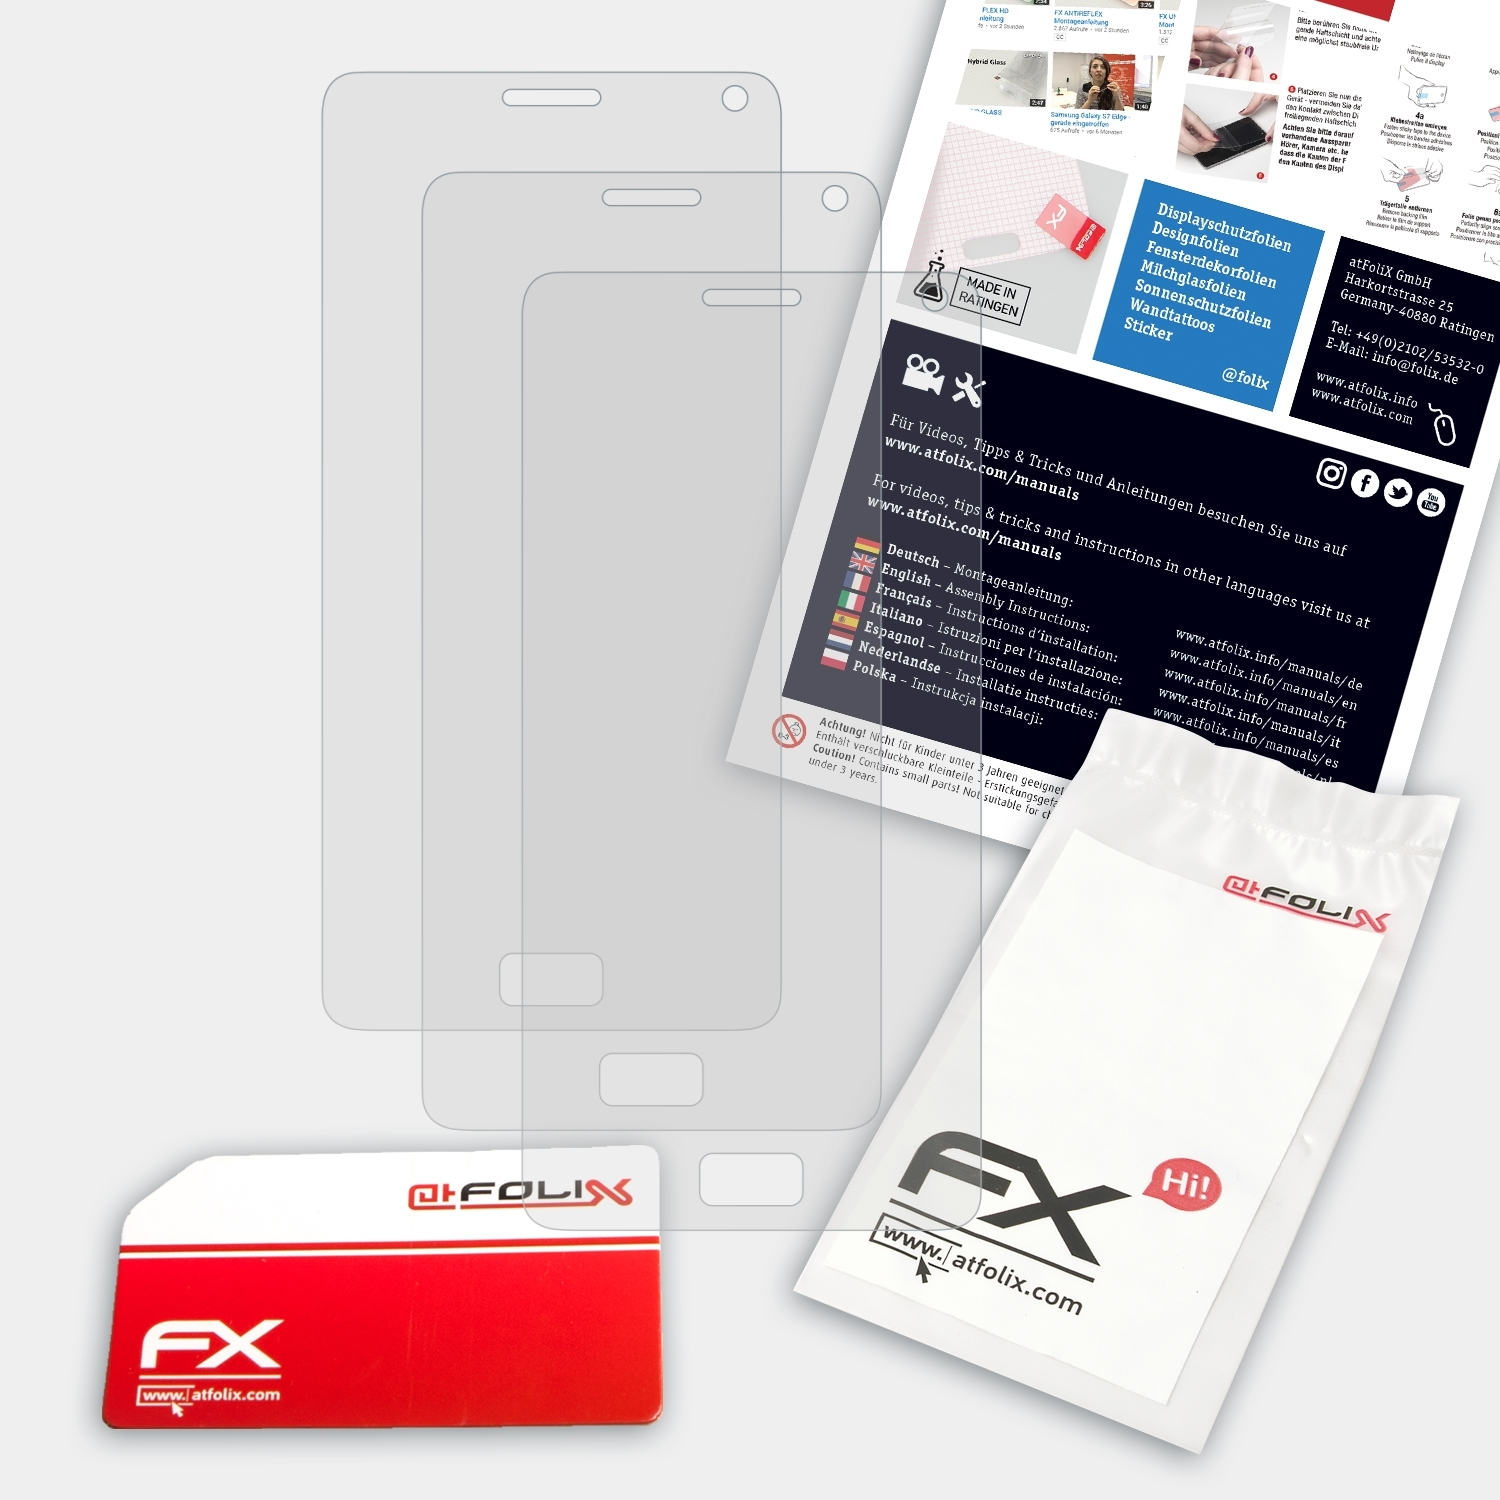 FX-Antireflex 3x Displayschutz(für ATFOLIX P1) Vibe Lenovo